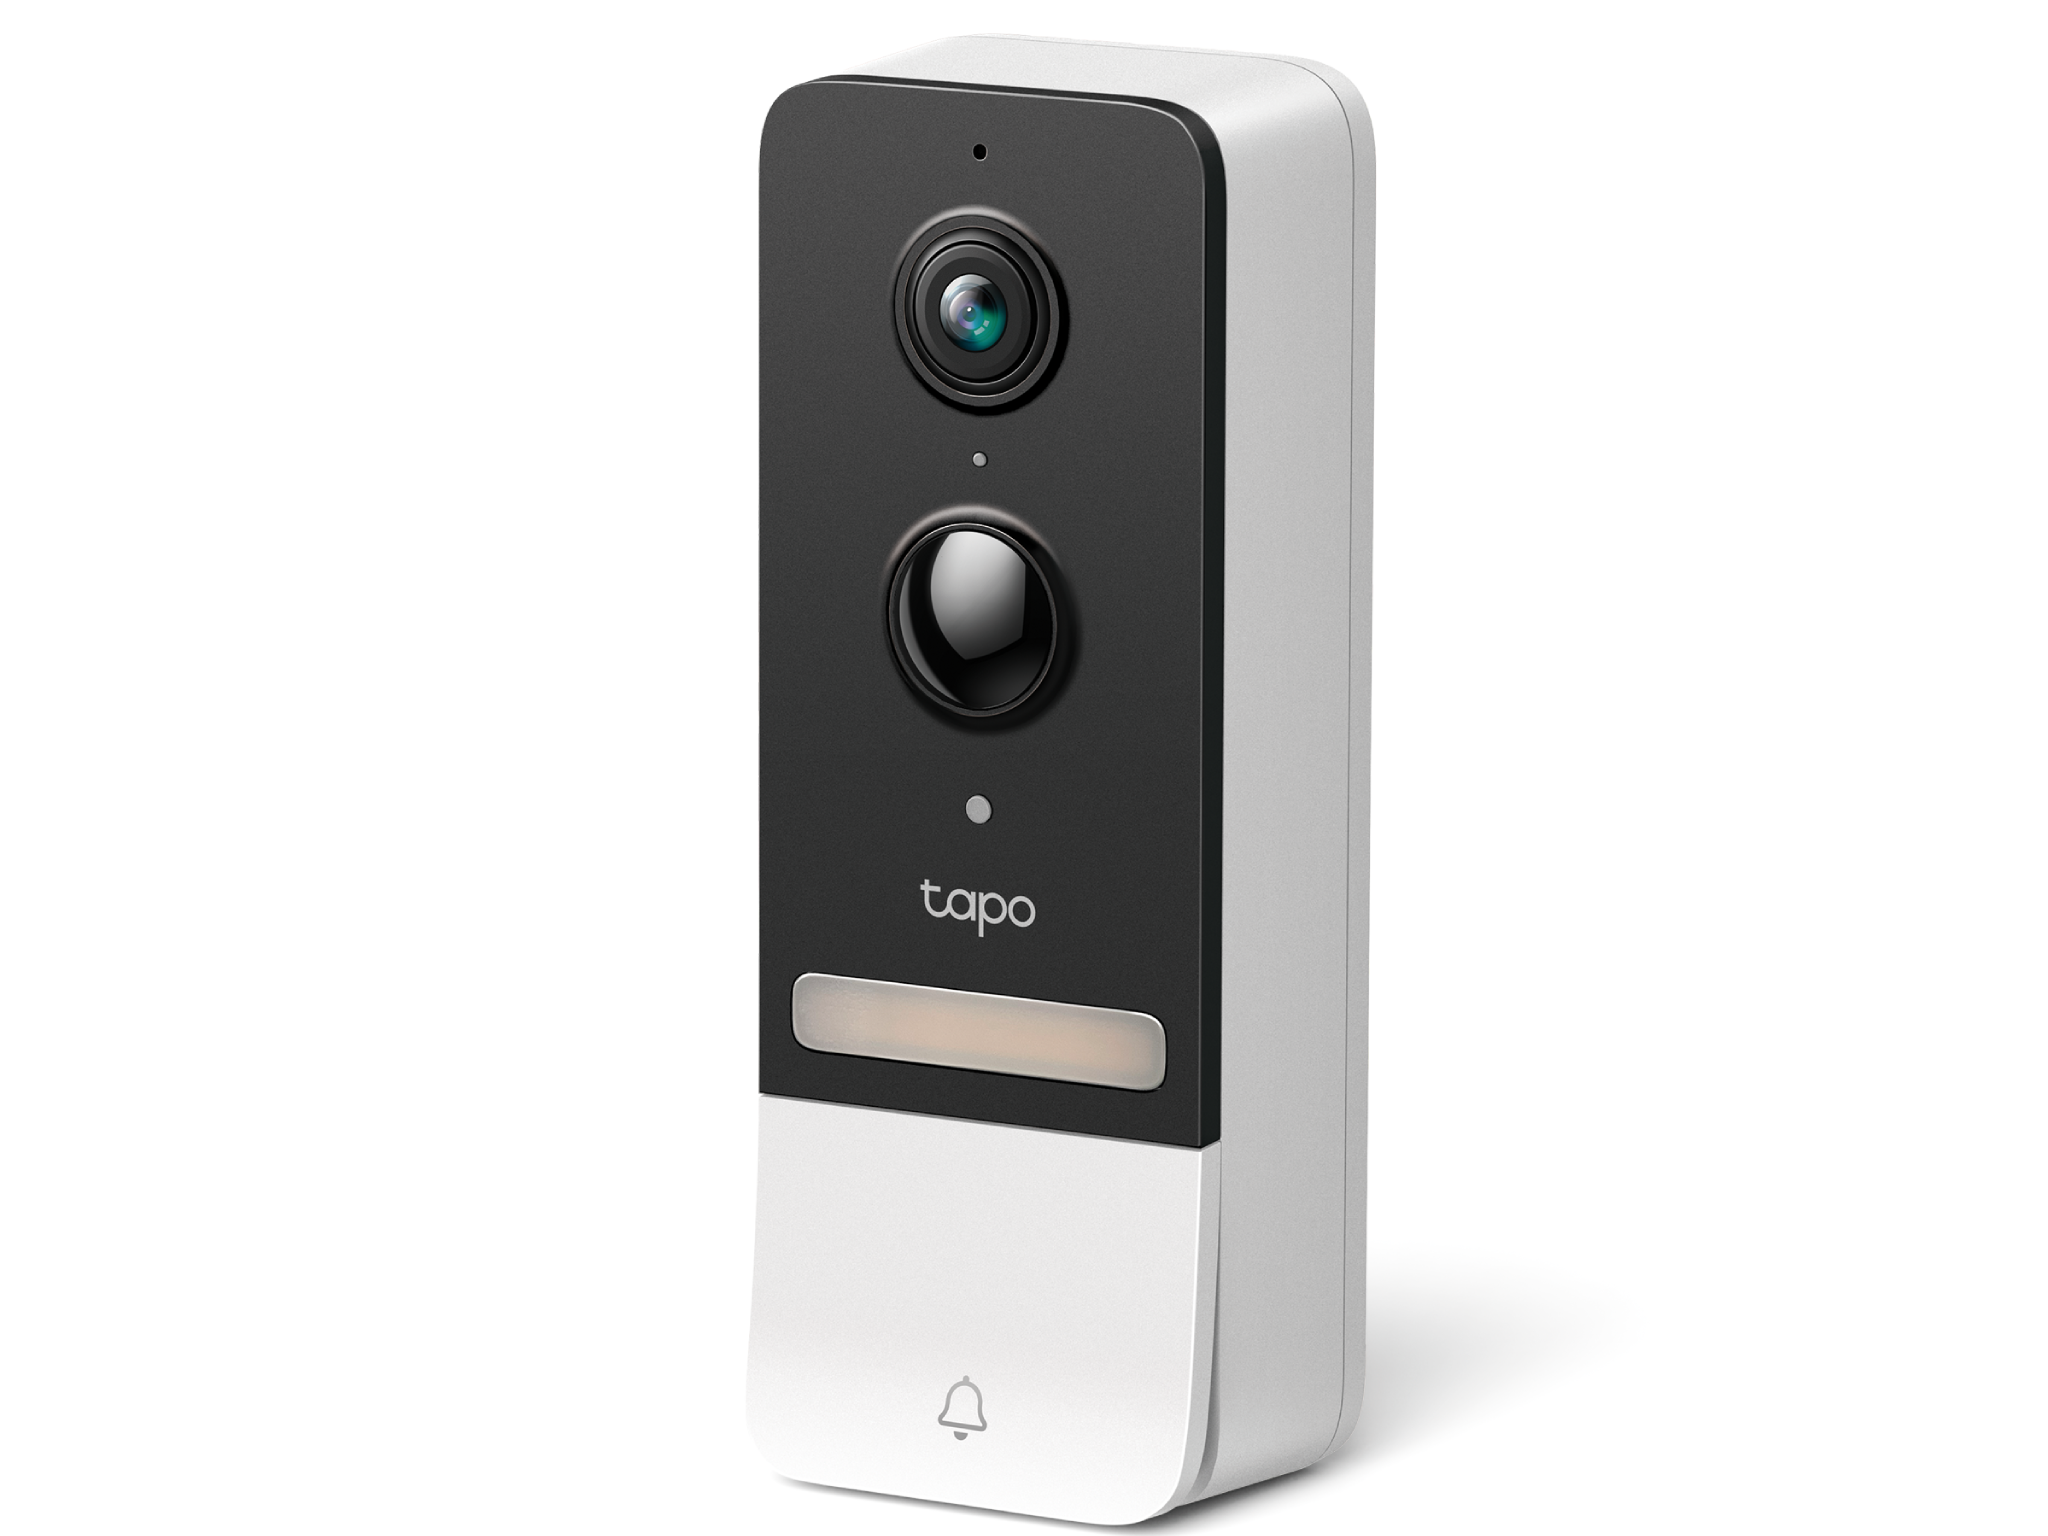 Tapo-D230-smart-battery-video-doorbell-Indybest-review